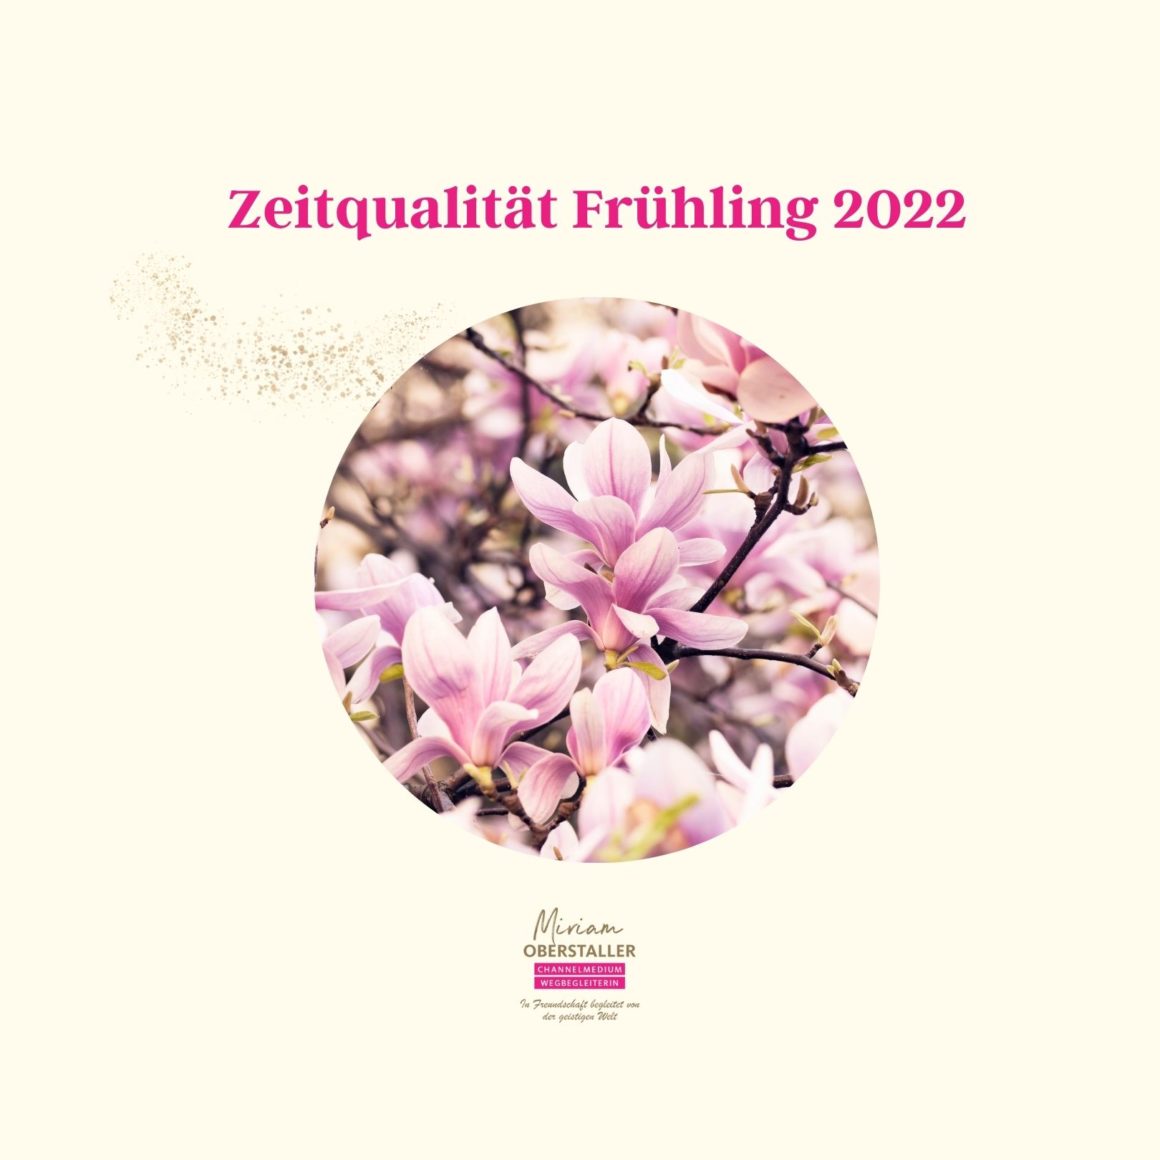 Channeling Zeitqualität Frühling 2022